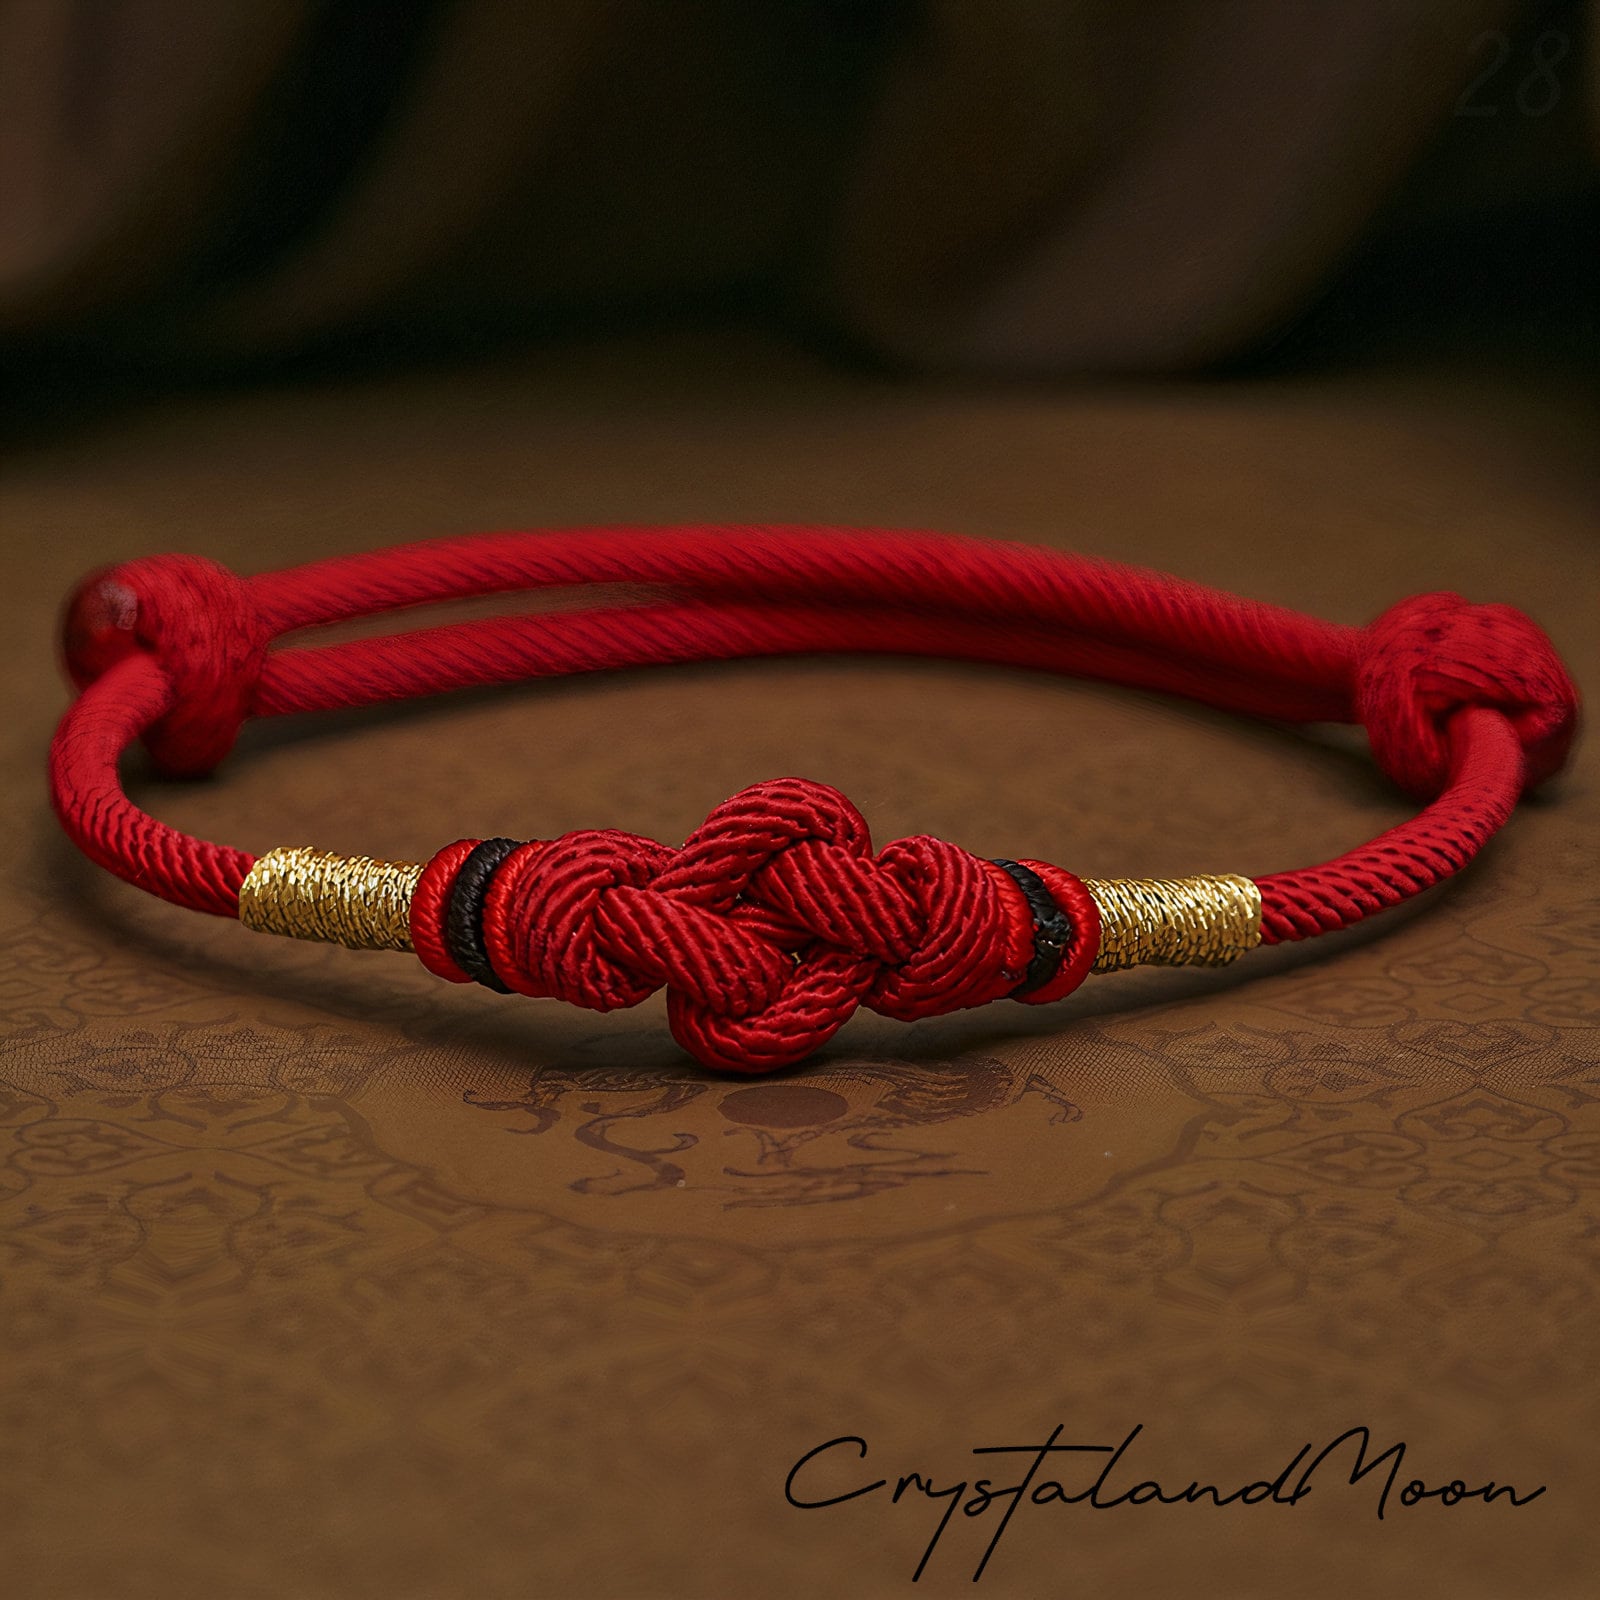 Best Friend Rope Bracelet. String Friendship Bracelet for Her or Him. Mens  Blue Bracelet. Handmade Hawaii Style Gift for Guys, Couples. 2mm